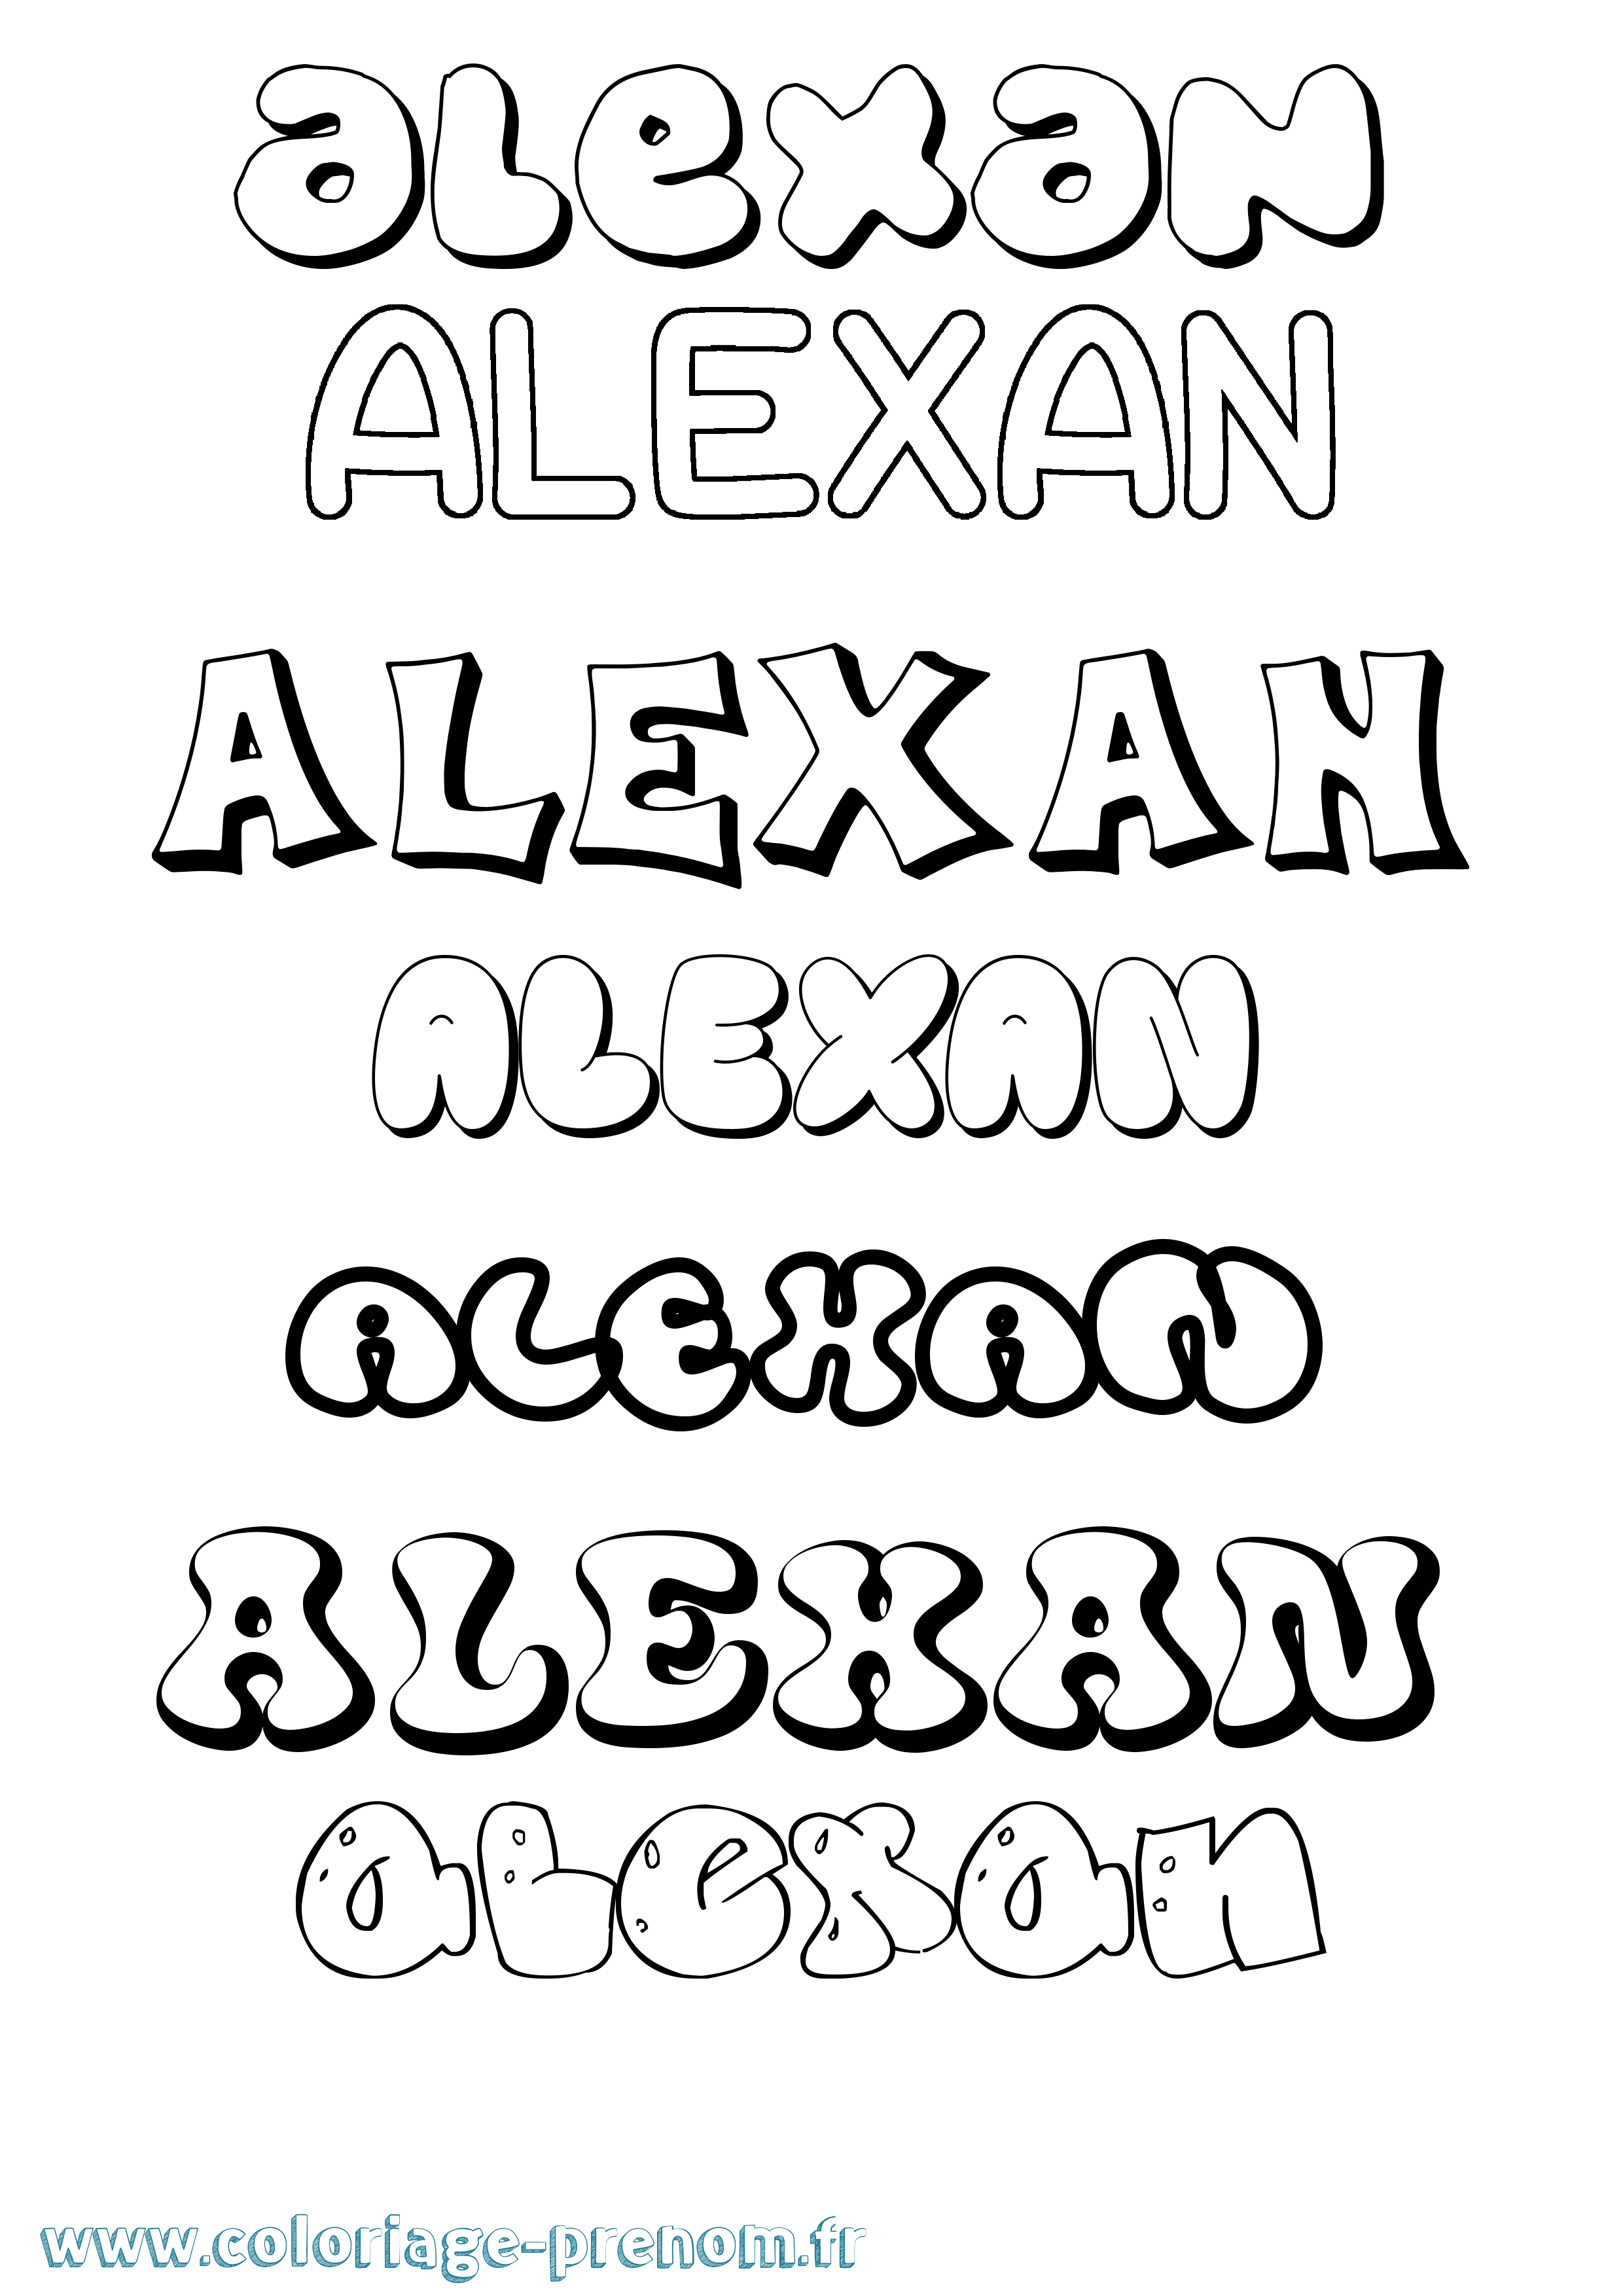 Coloriage prénom Alexan Bubble